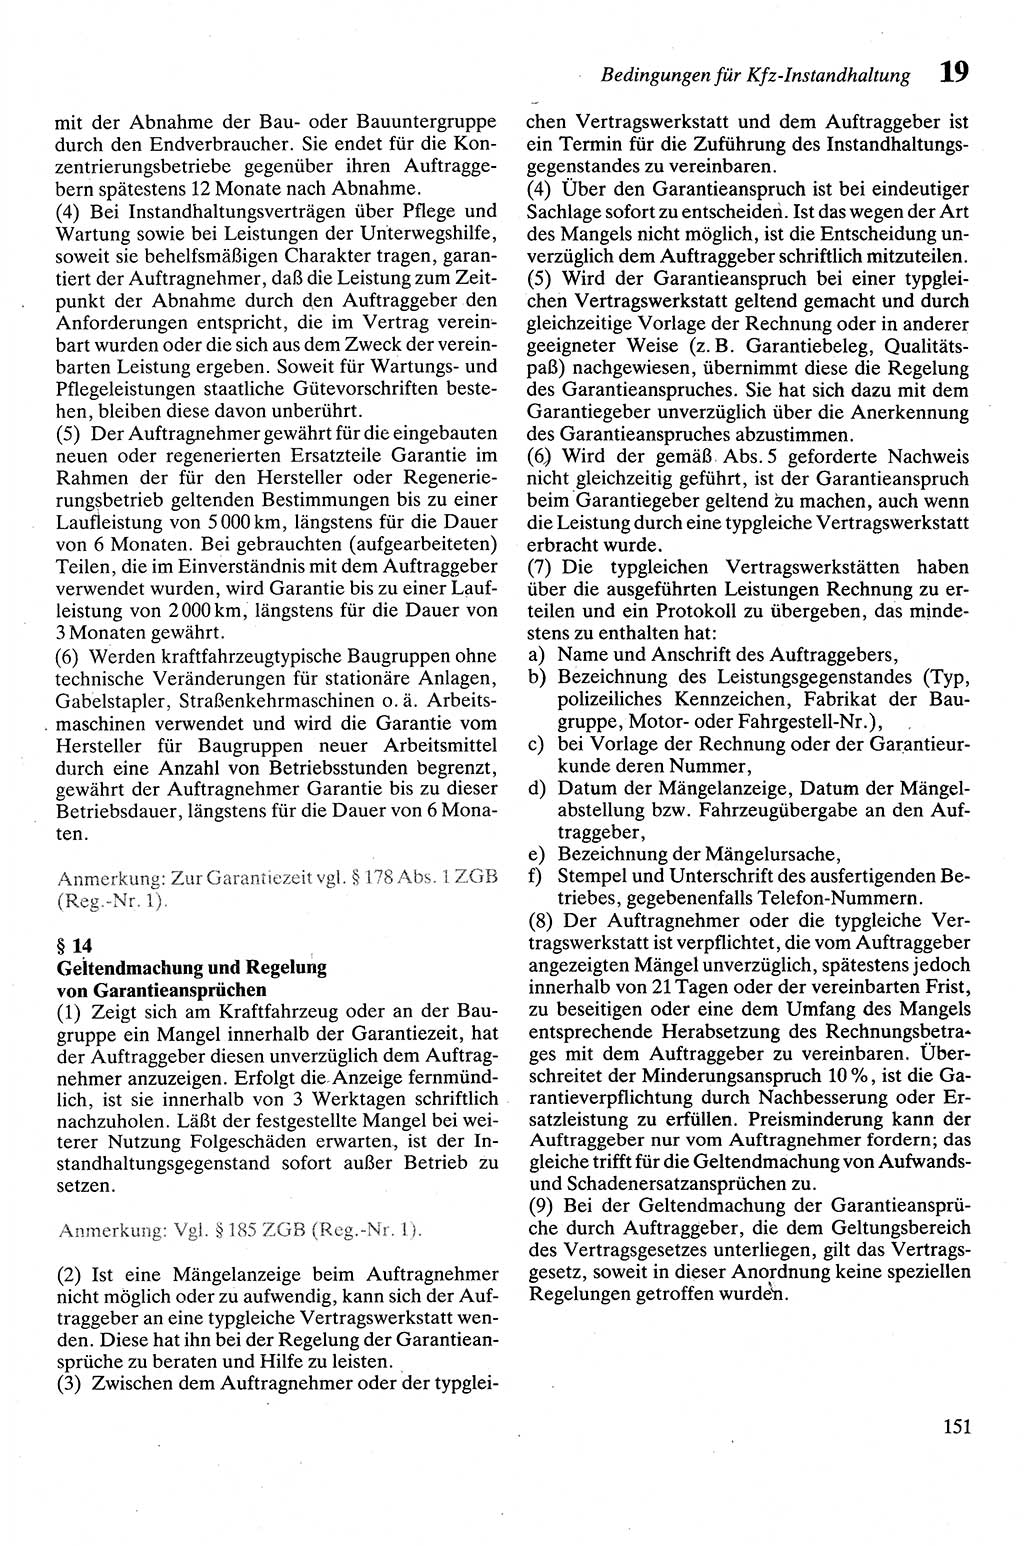 Zivilgesetzbuch (ZVG) sowie angrenzende Gesetze und Bestimmungen [Deutsche Demokratische Republik (DDR)] 1975, Seite 151 (ZGB Ges. Best. DDR 1975, S. 151)